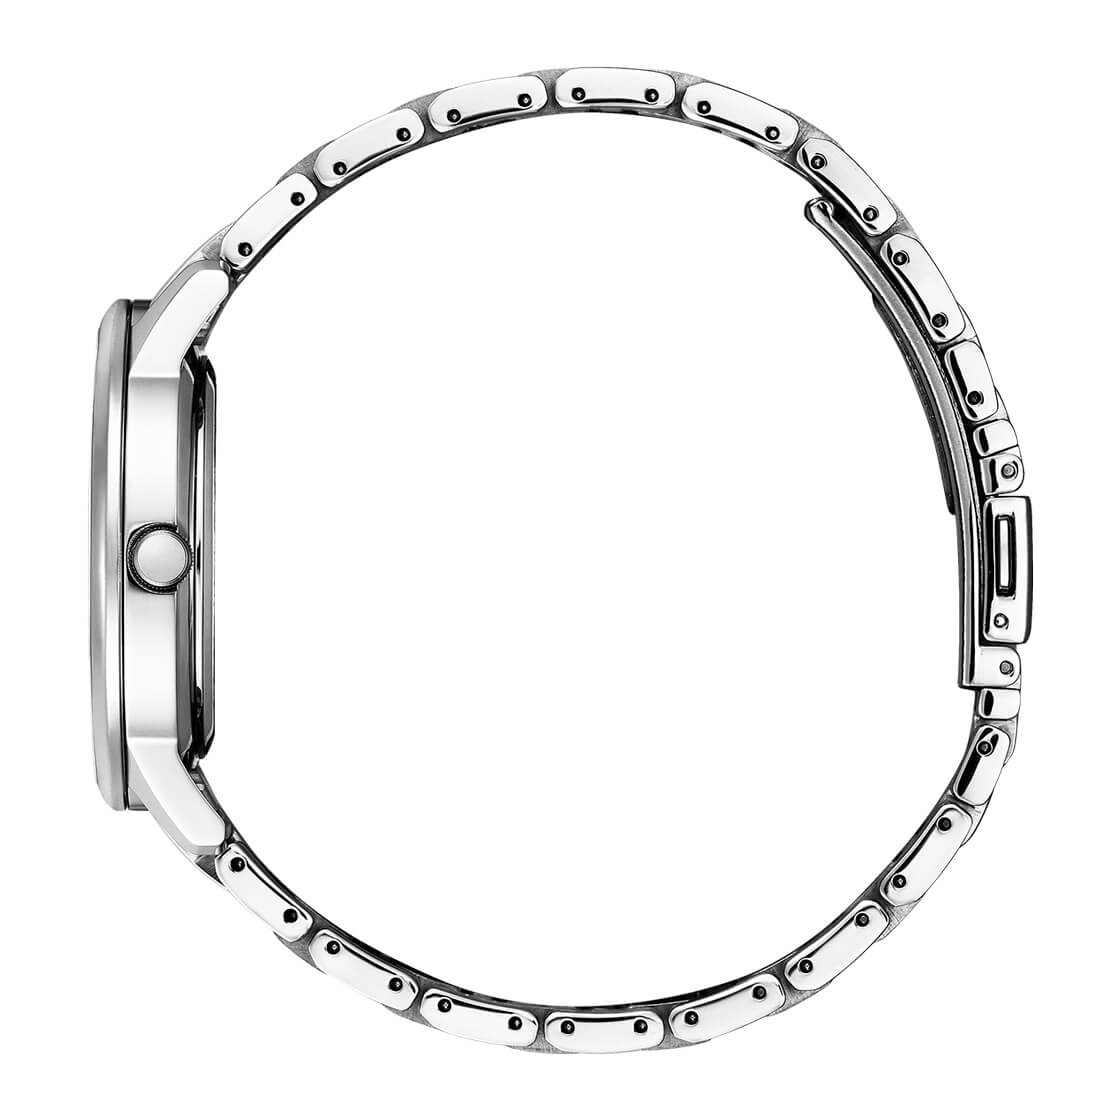 Citizen - BM7520-88N -Eco DriveStainless Steel Watch For Men